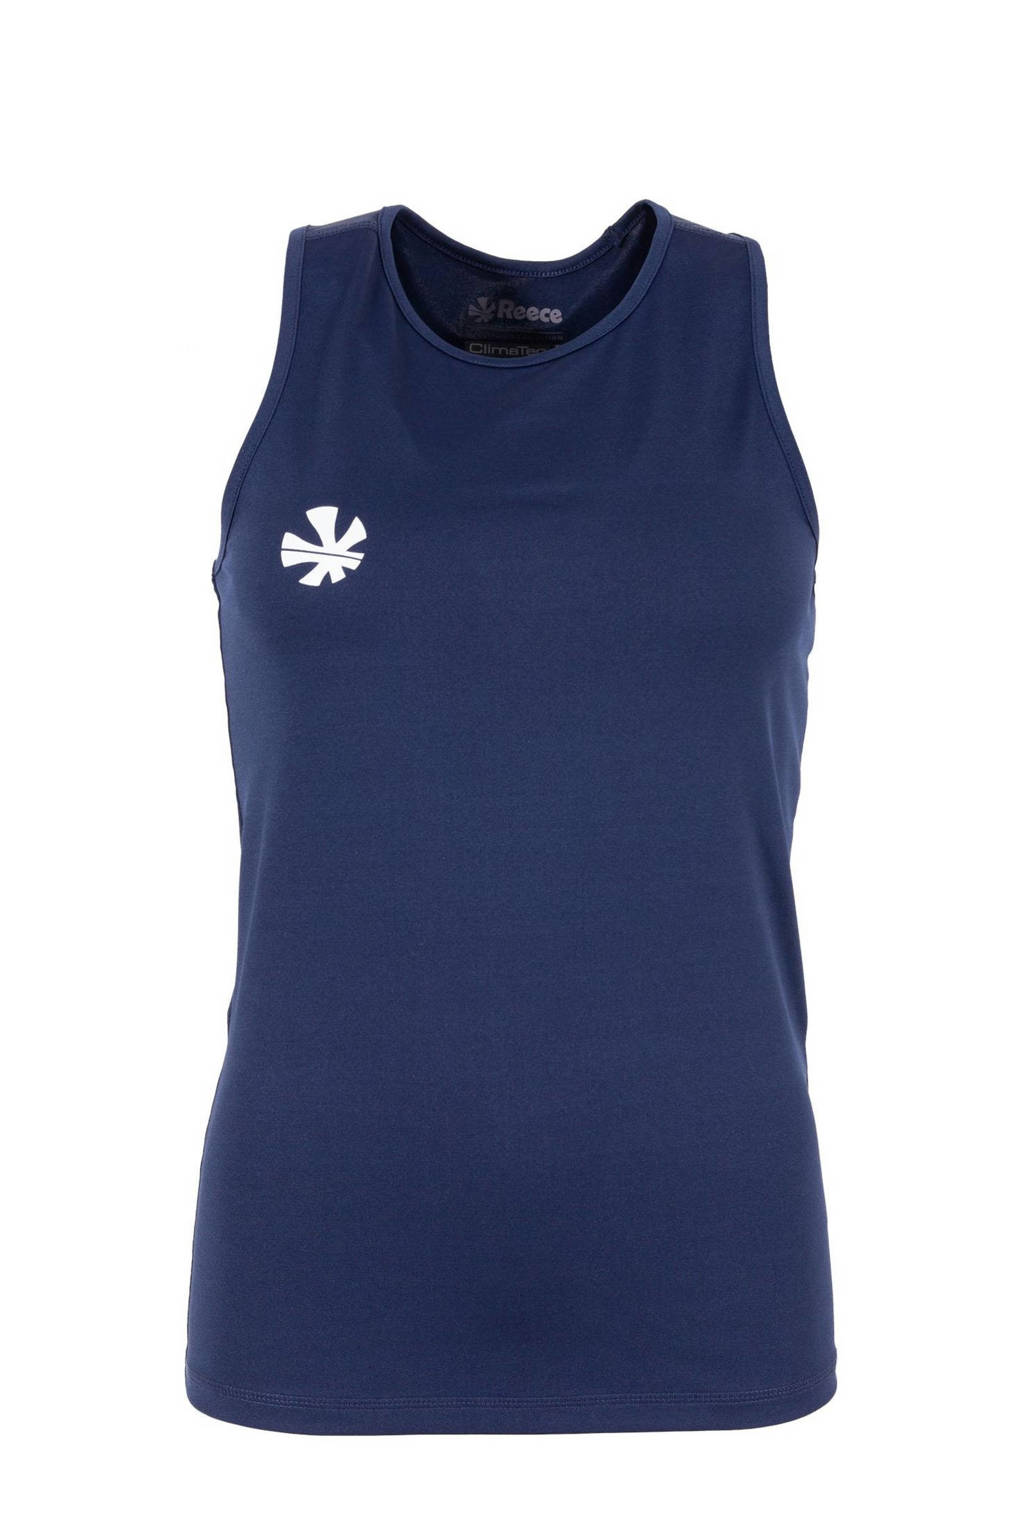 Donkerblauwe dames Reece Australia sportsinglet van polyester met ronde hals